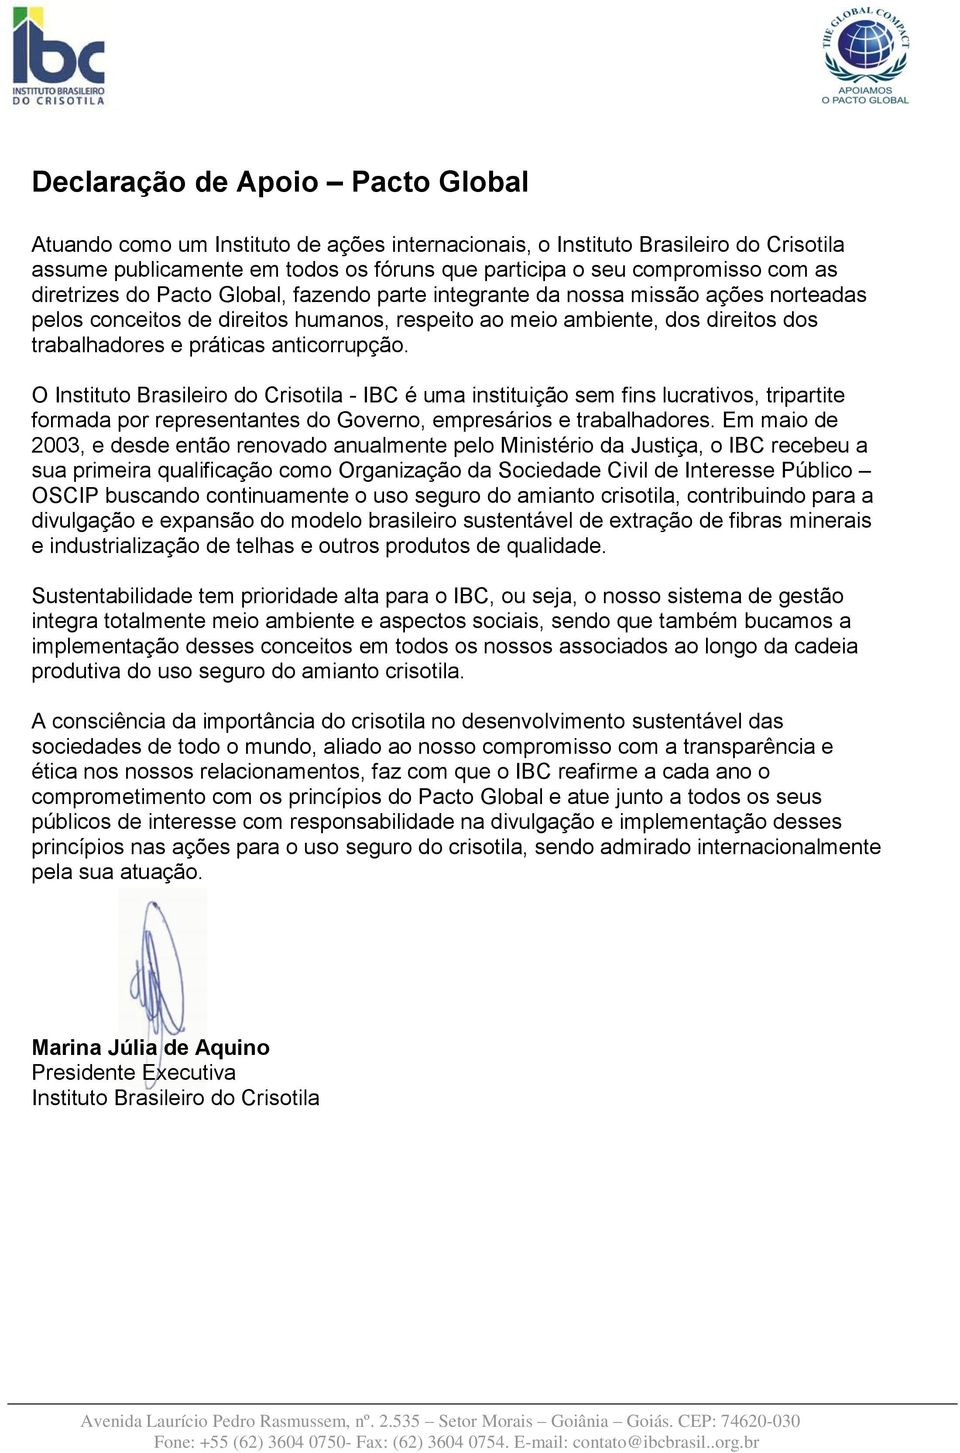 anticorrupção. O Instituto Brasileiro do Crisotila - IBC é uma instituição sem fins lucrativos, tripartite formada por representantes do Governo, empresários e trabalhadores.